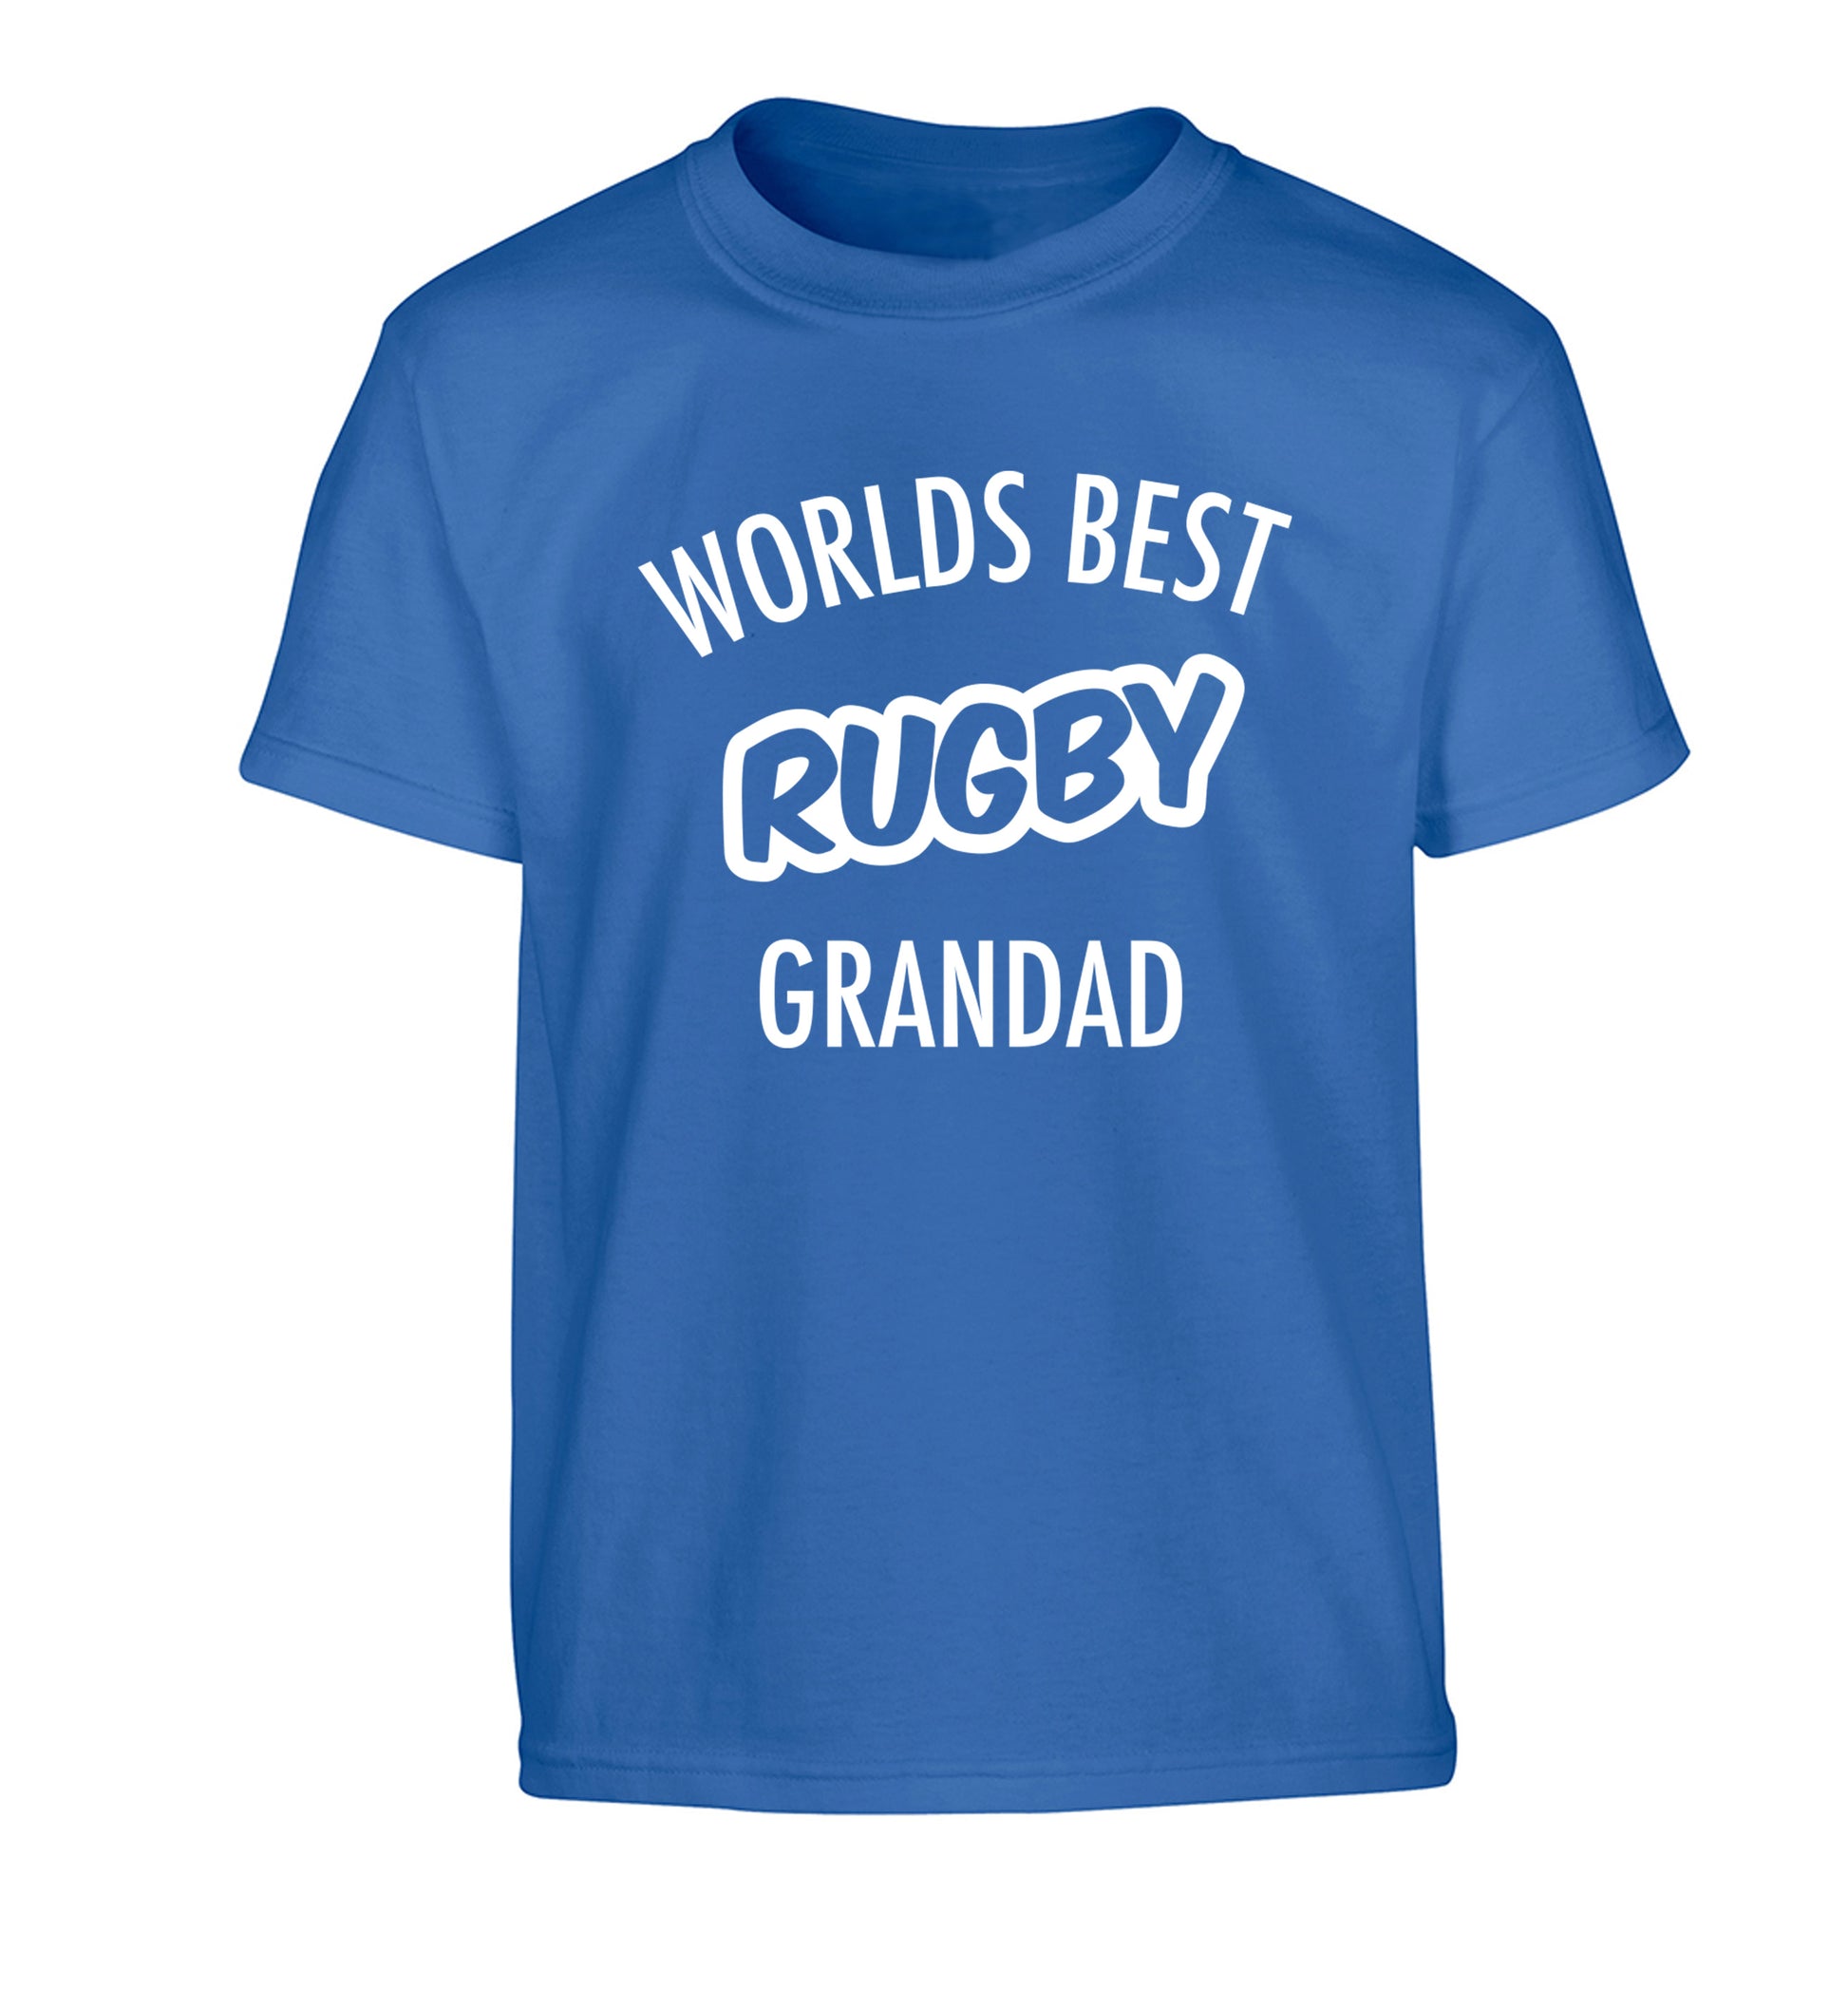 Worlds best rugby grandad Children's blue Tshirt 12-13 Years